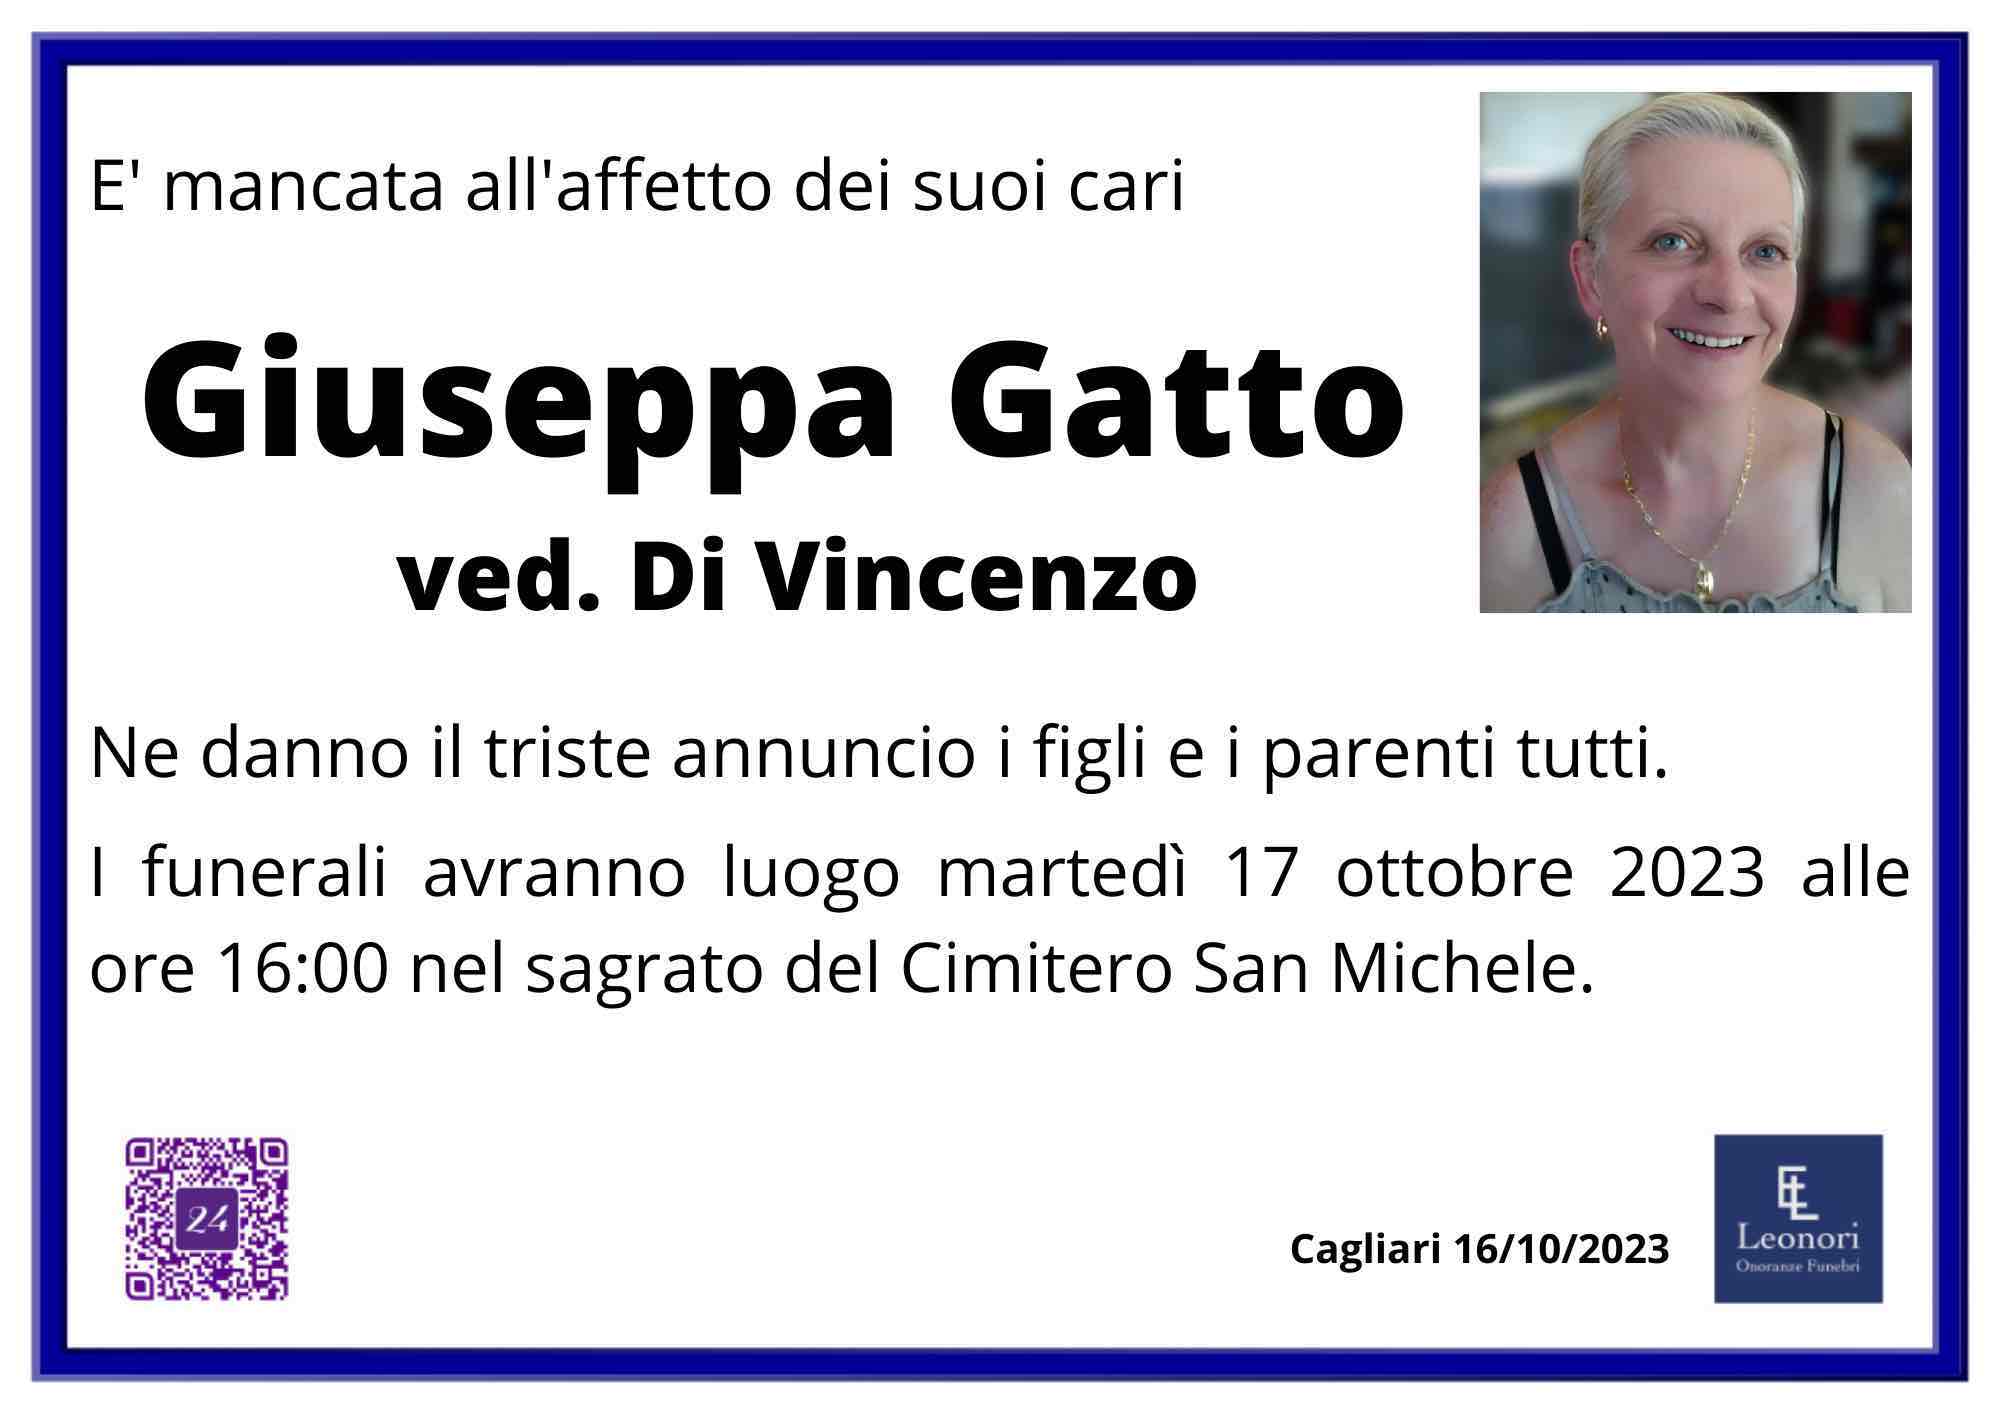 Giuseppa Gatto